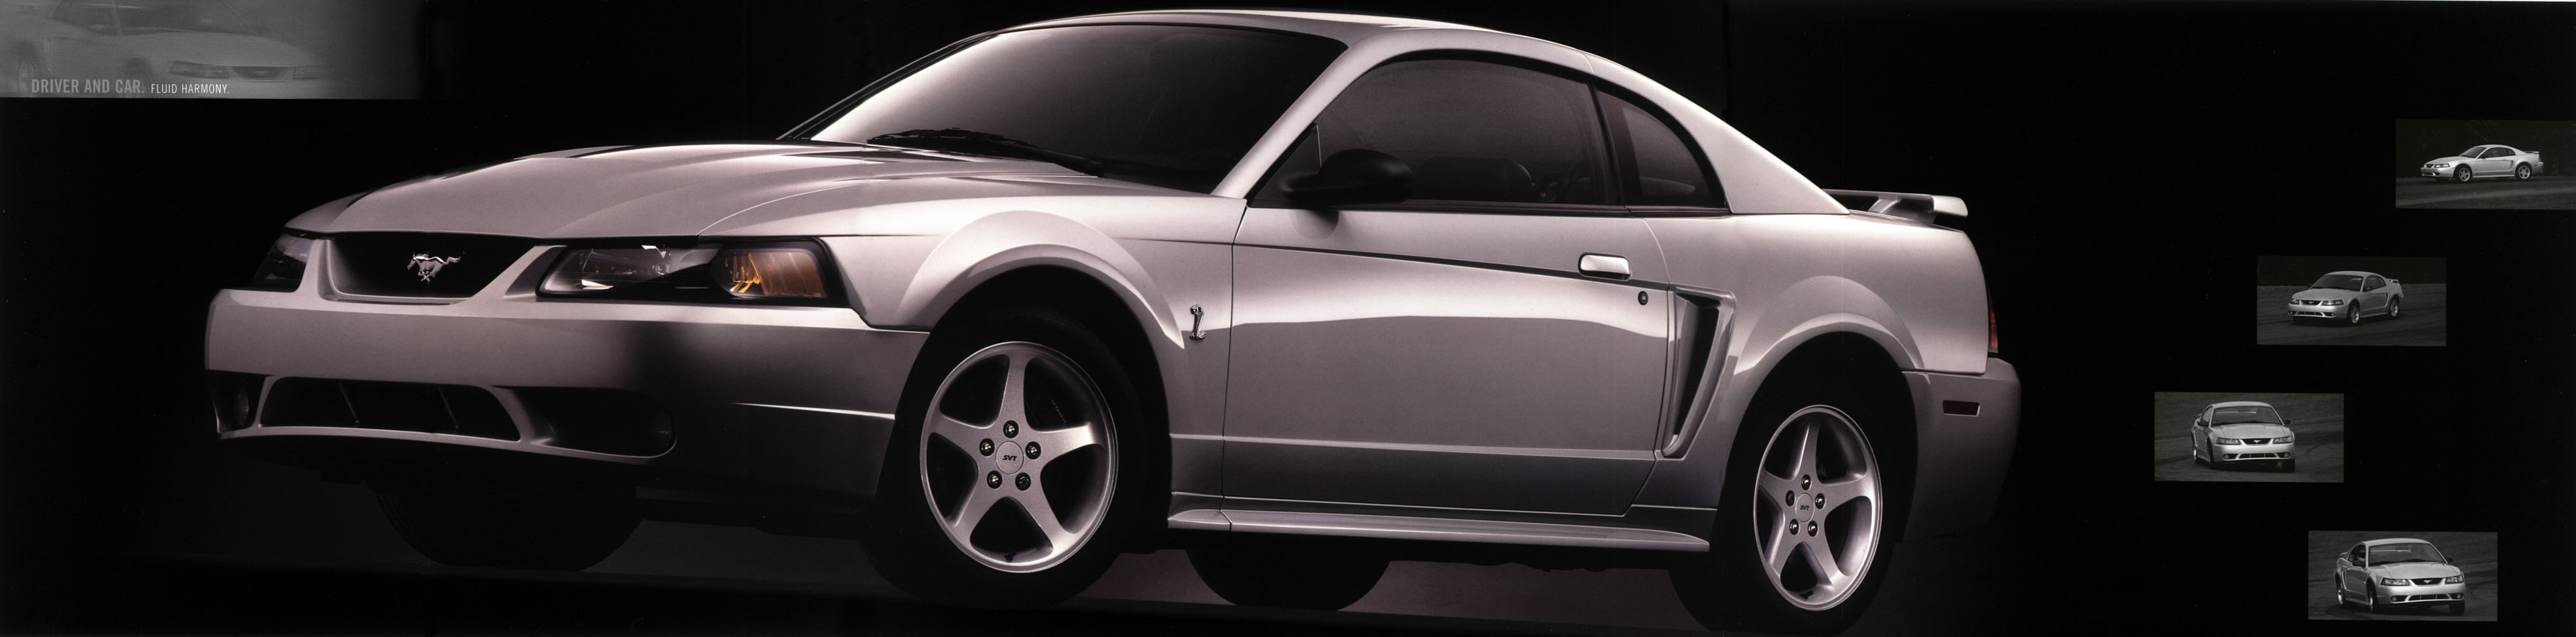 2001 Ford Mustang SVT Cobra-07